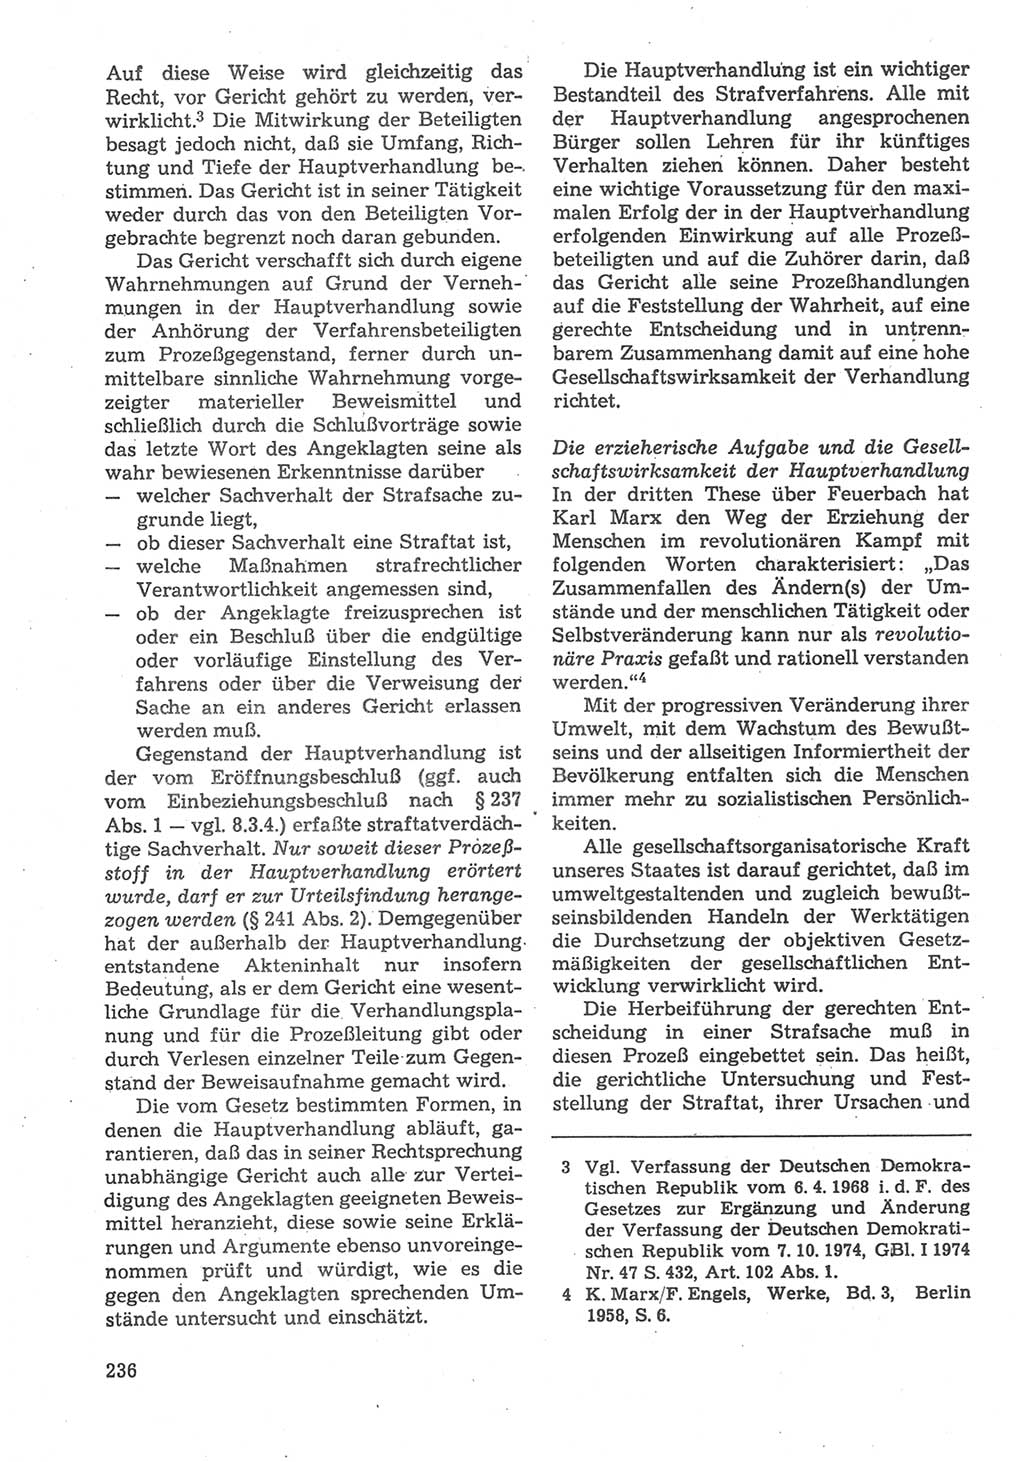 Strafverfahrensrecht [Deutsche Demokratische Republik (DDR)], Lehrbuch 1987, Seite 236 (Strafverf.-R. DDR Lb. 1987, S. 236)